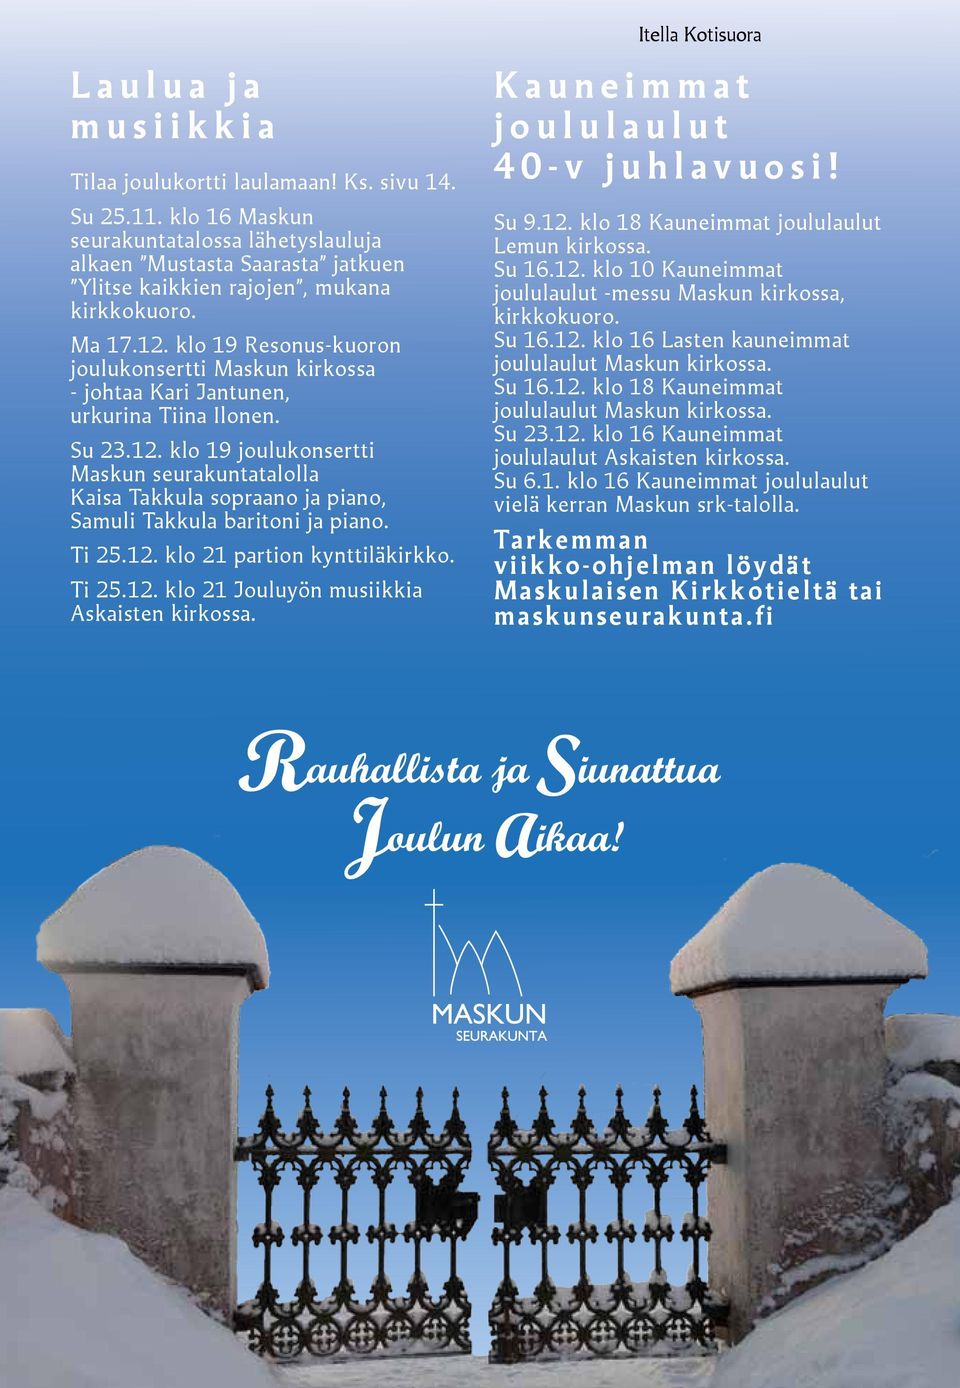 klo 19 Resonus-kuoron joulukonsertti Maskun kirkossa - johtaa Kari Jantunen, urkurina Tiina Ilonen. Su 23.12.